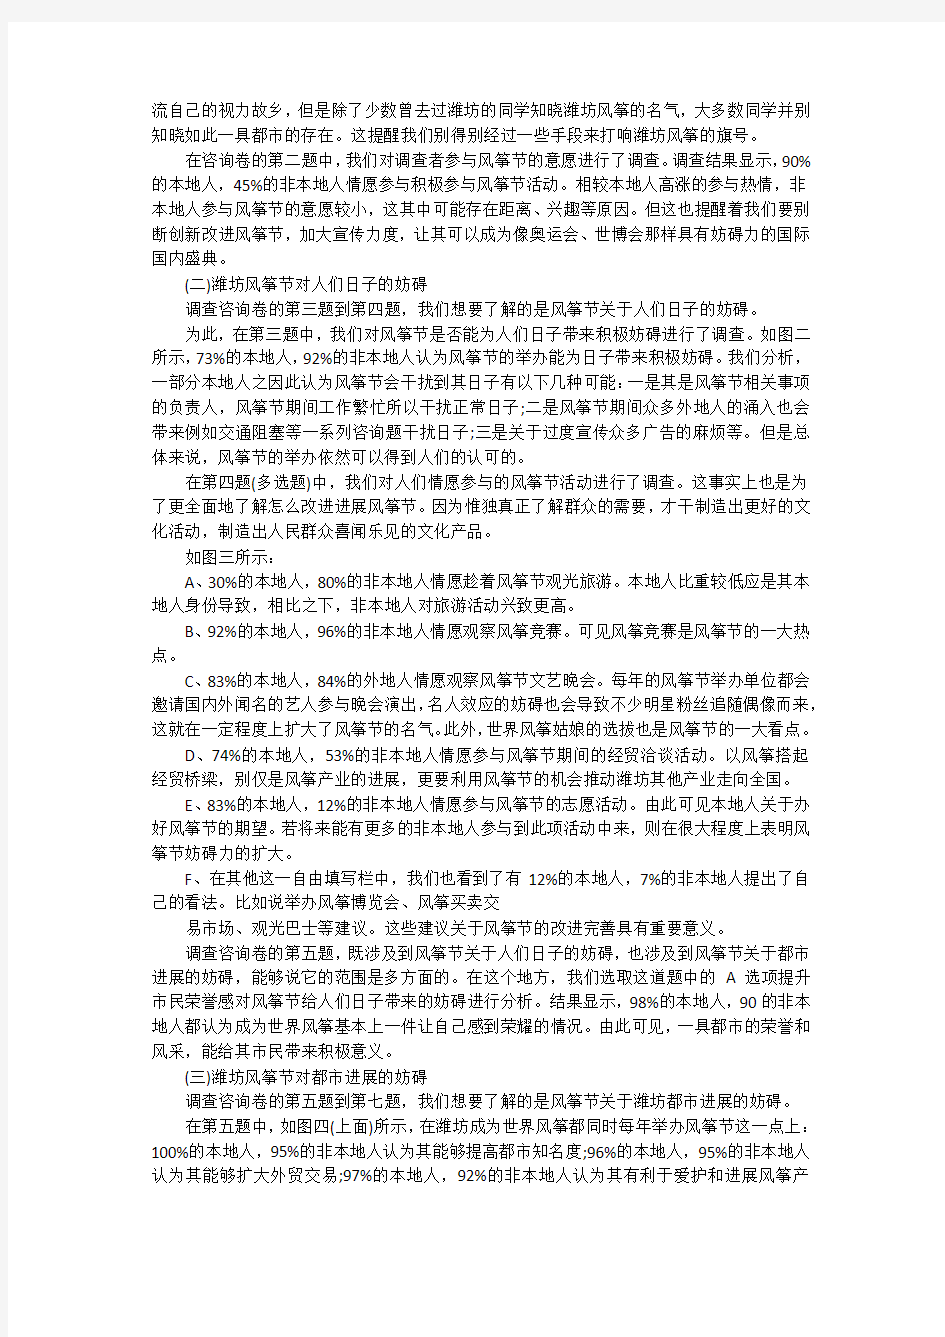 潍坊风筝节影响力的调查报告